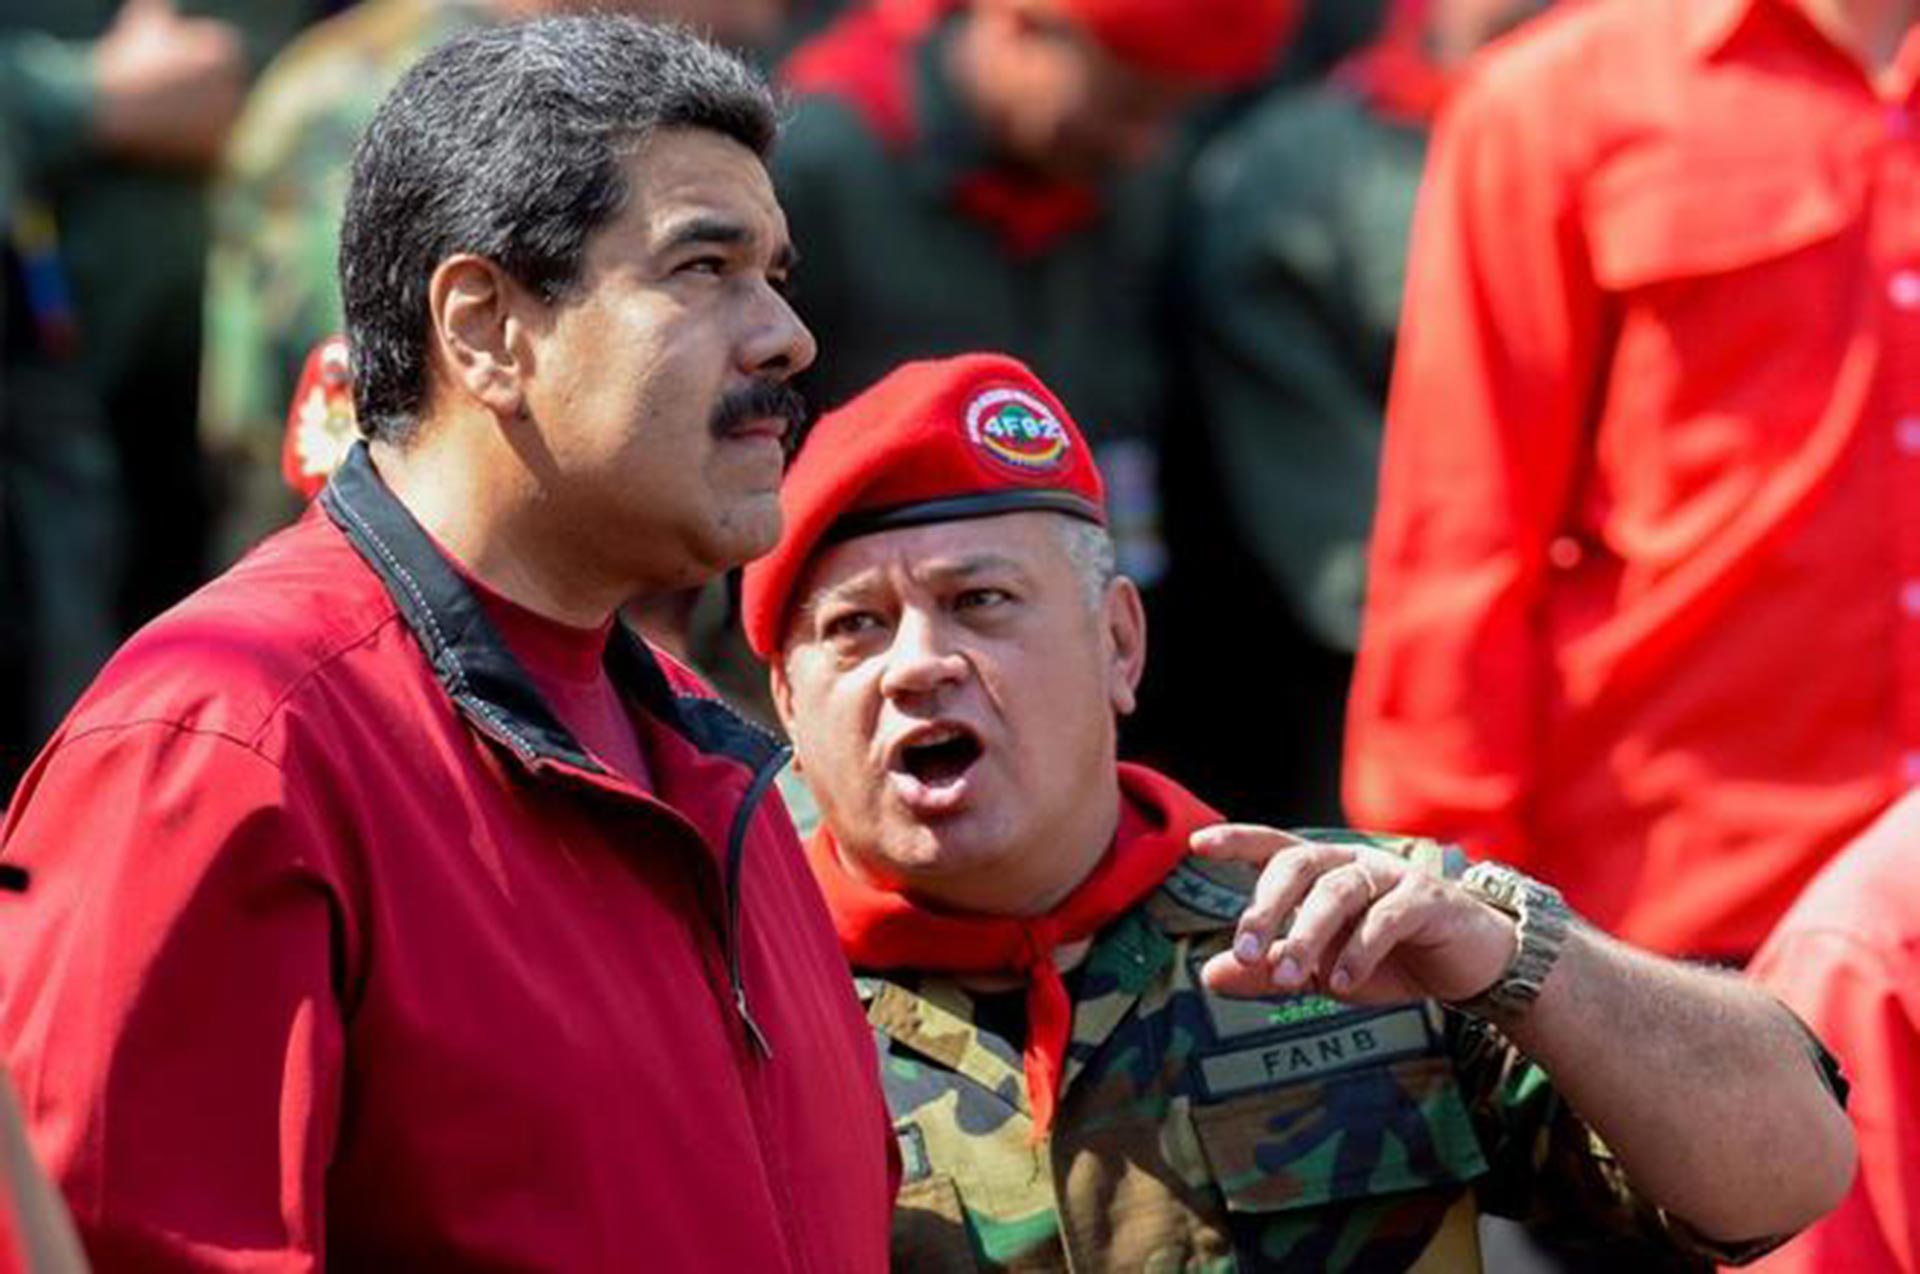 Diosdado Cabello insinuou uma operação para “decocainizar” a Colômbia semelhante à invasão da Ucrânia